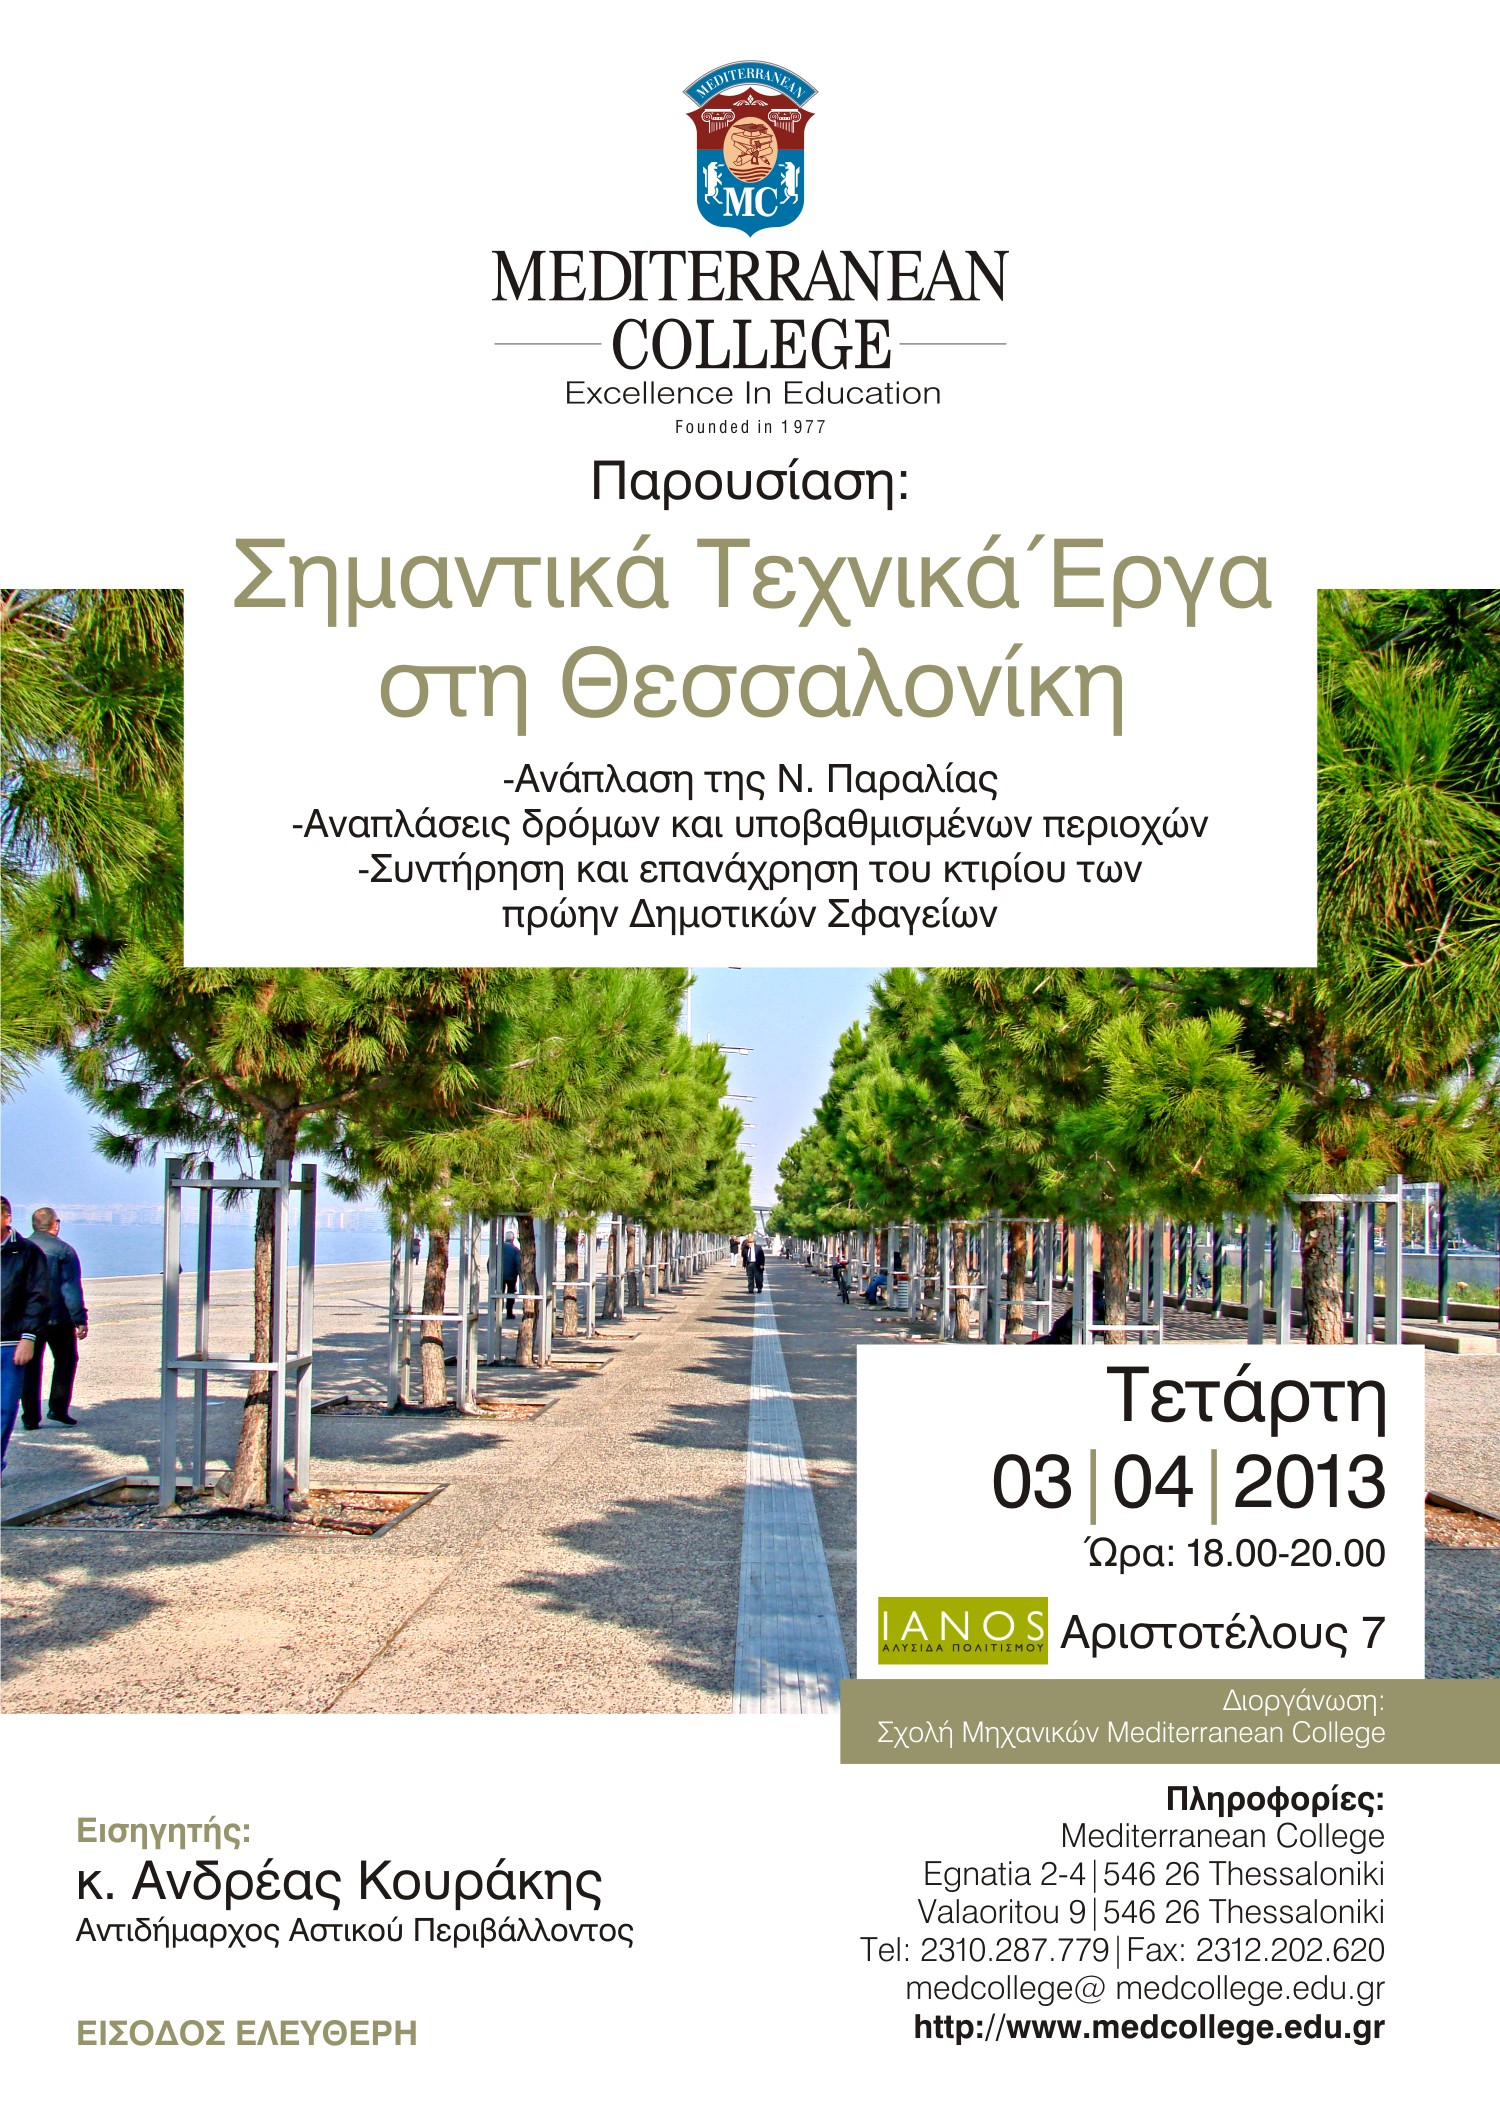 «Σημαντικά Τεχνικά Έργα στη Θεσσαλονίκη» από την Σχολή Μηχανικών του Mediterranean College